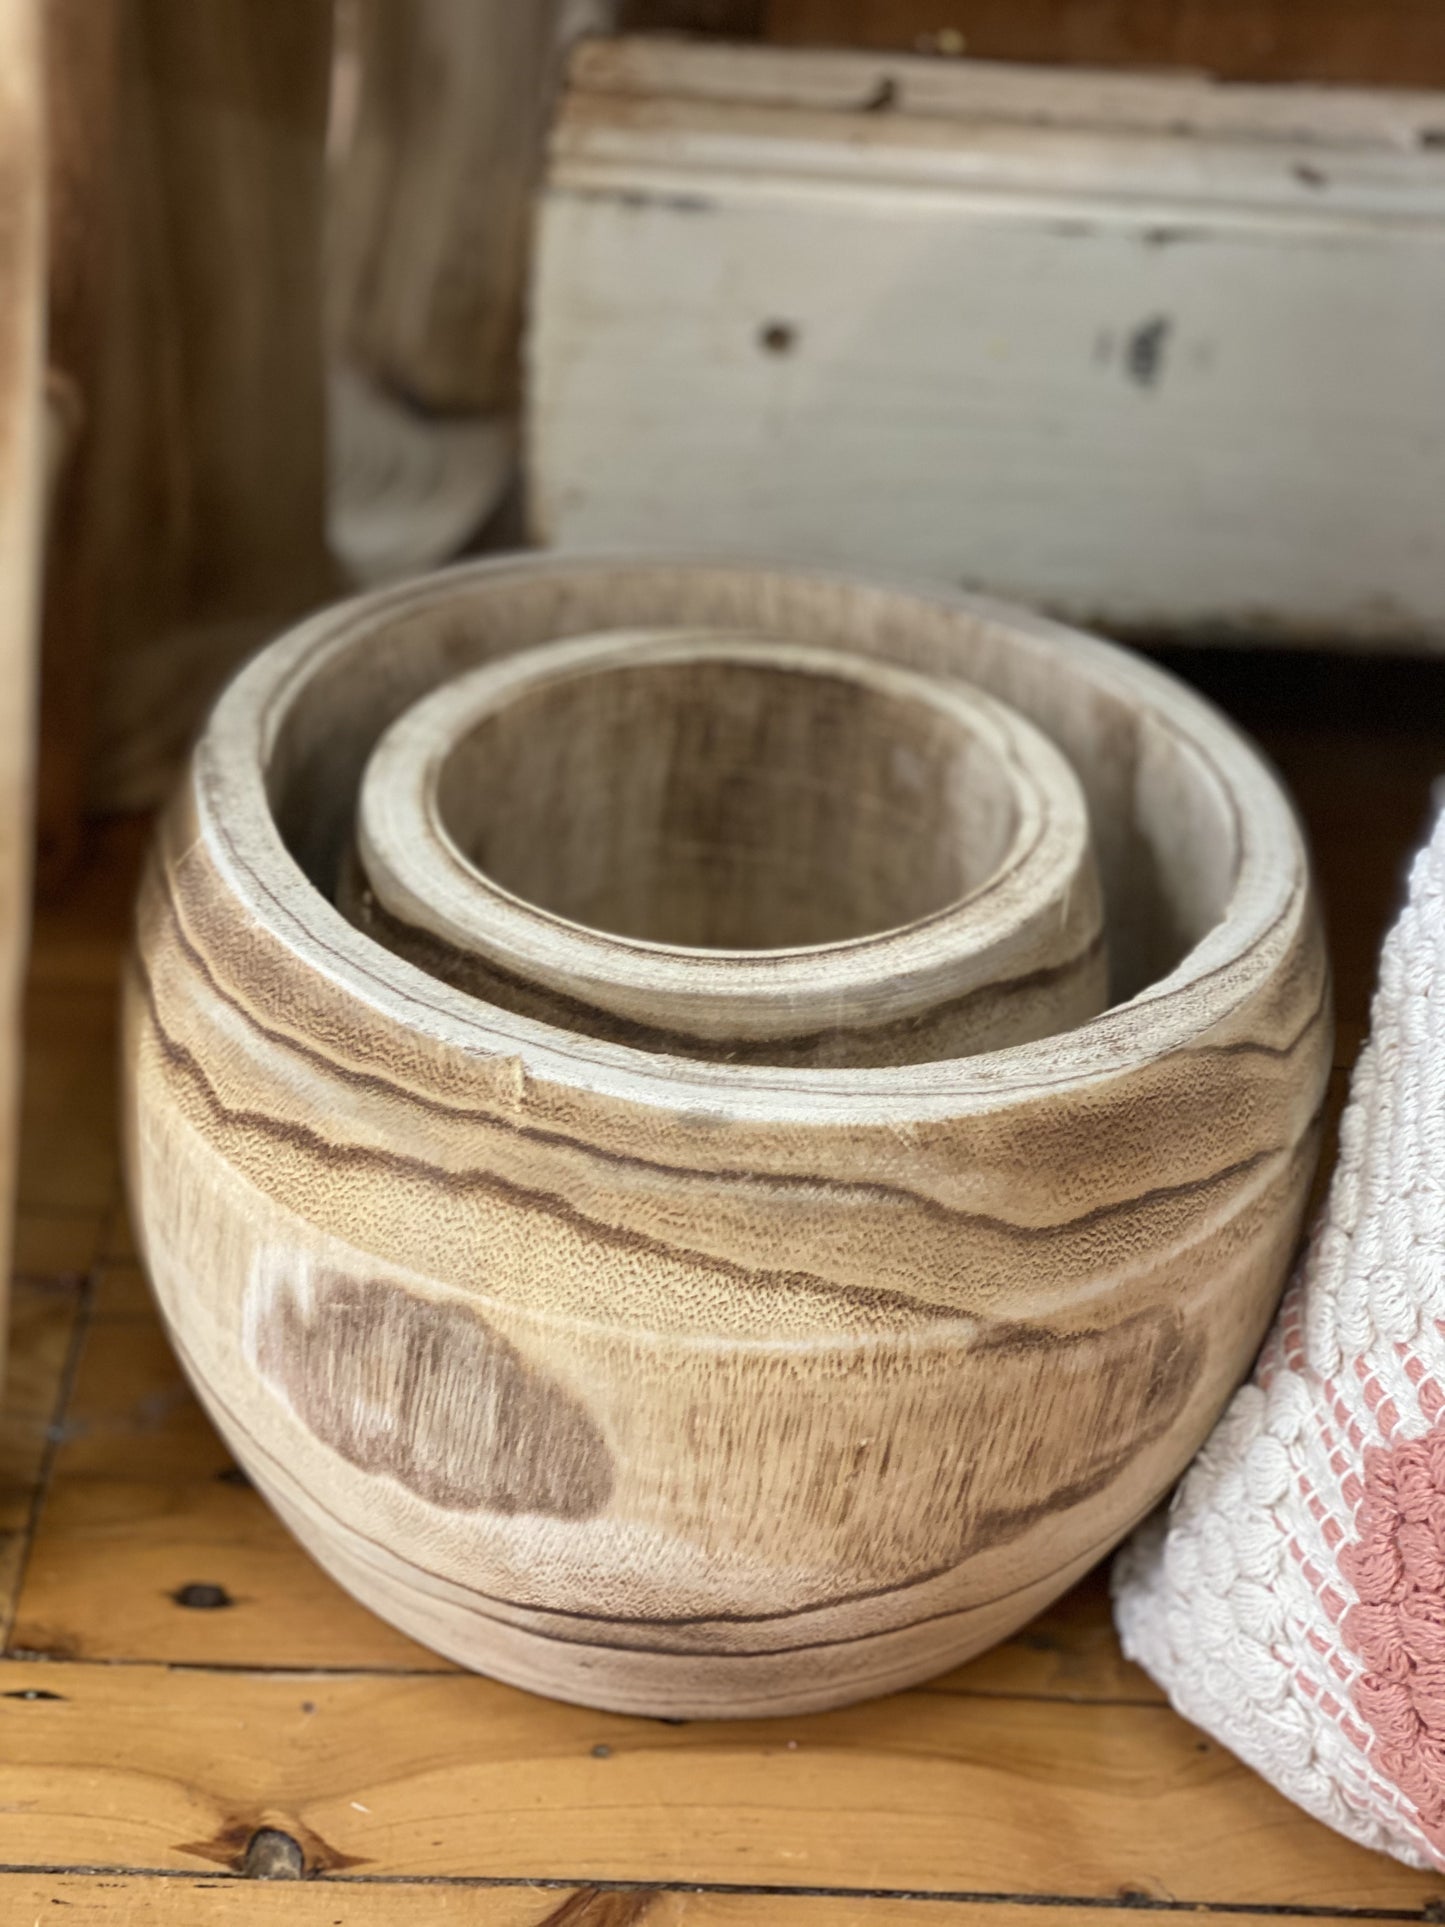 Timber bowl